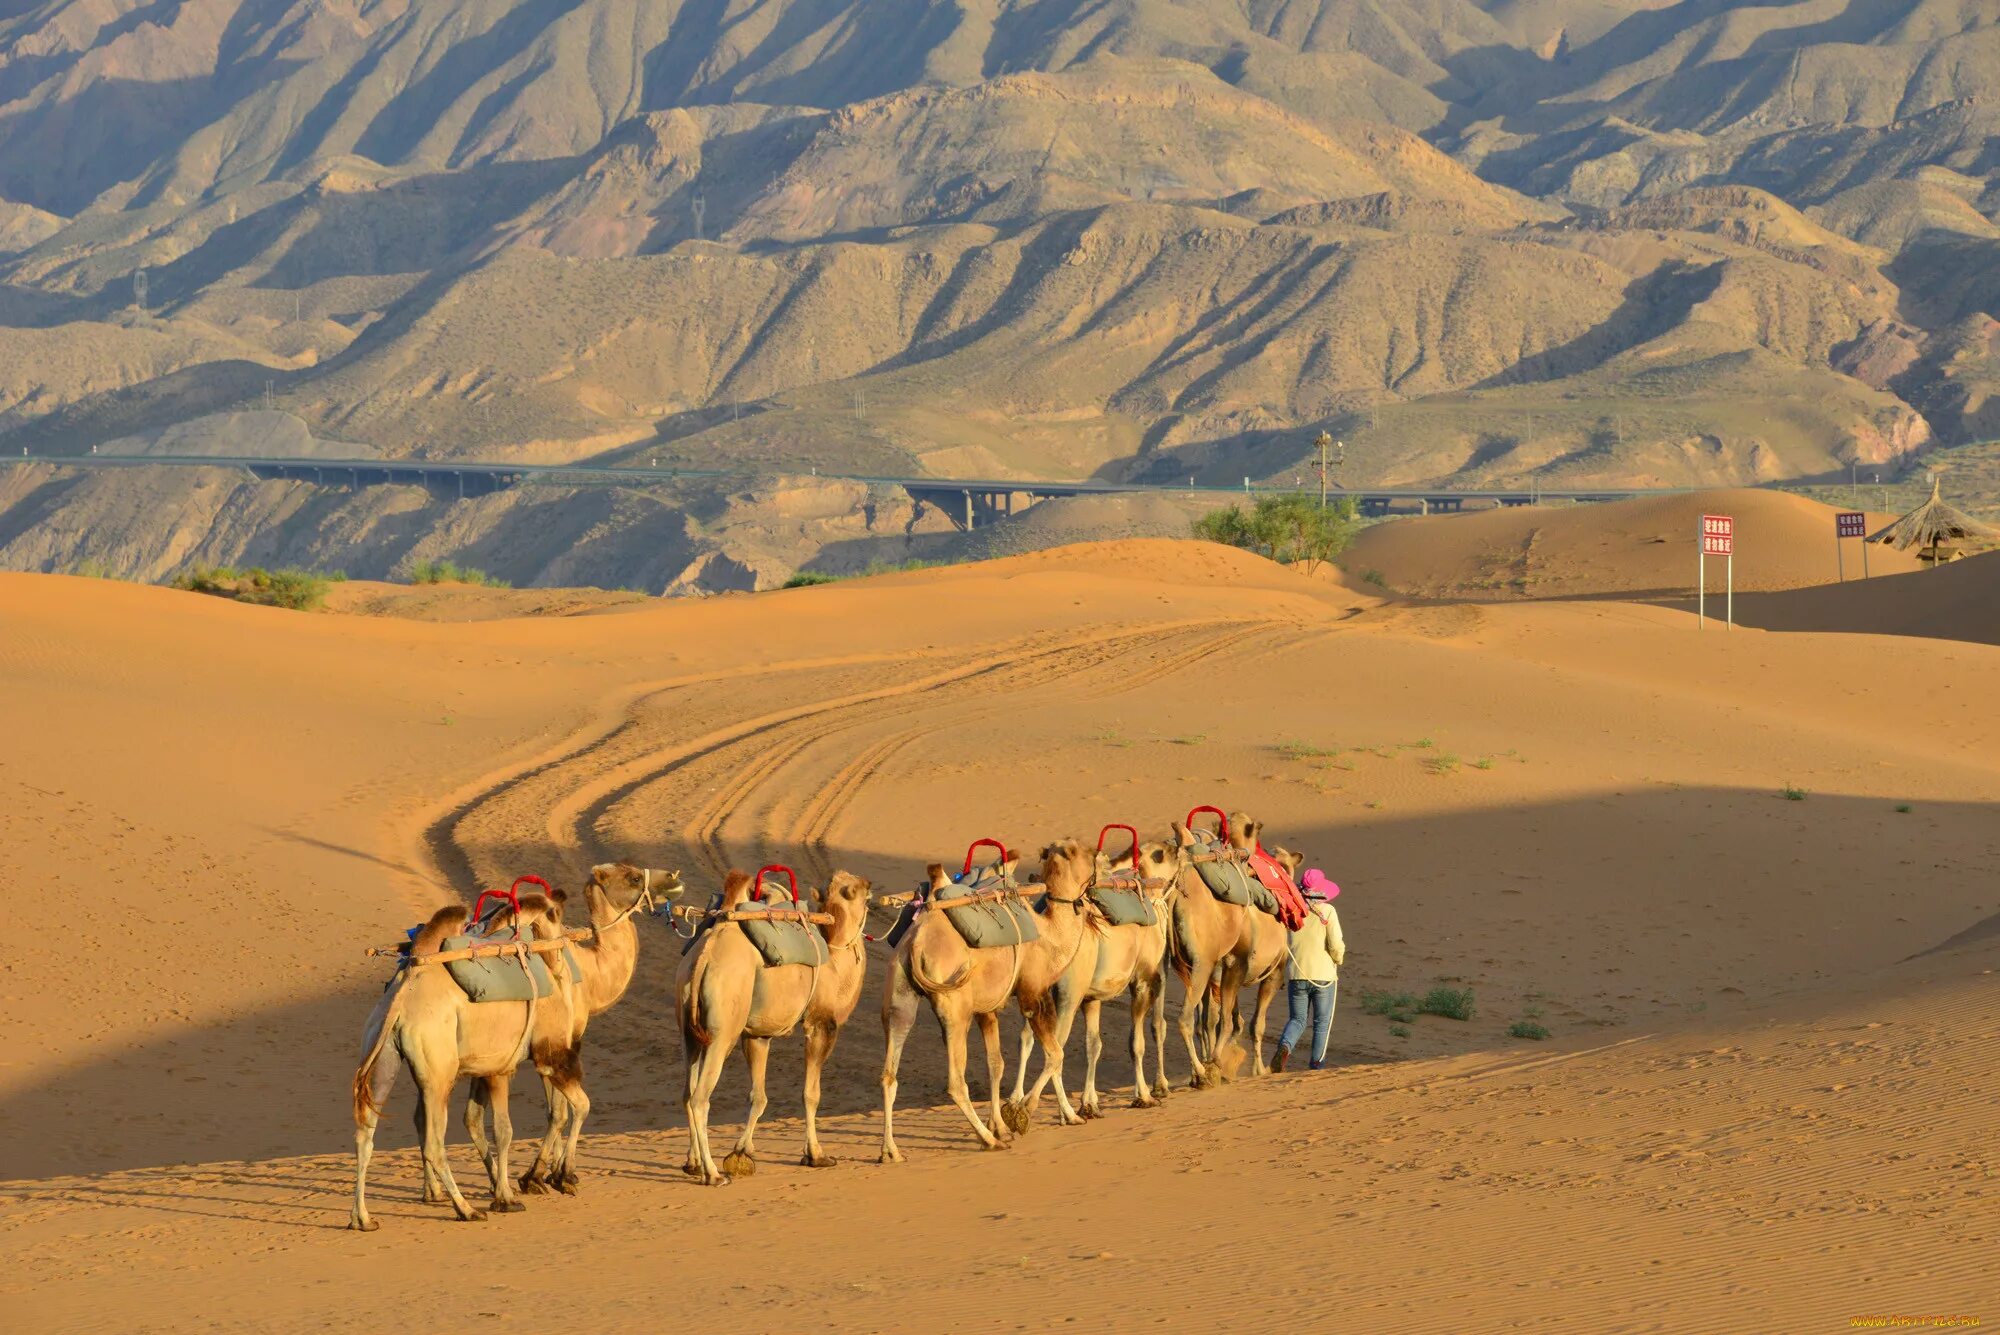 Караван рядом. Верблюд Караван пустыни. Караван верблюдов в пустыне. Караван с верблюдами в пустыне. Караван бактрианов.